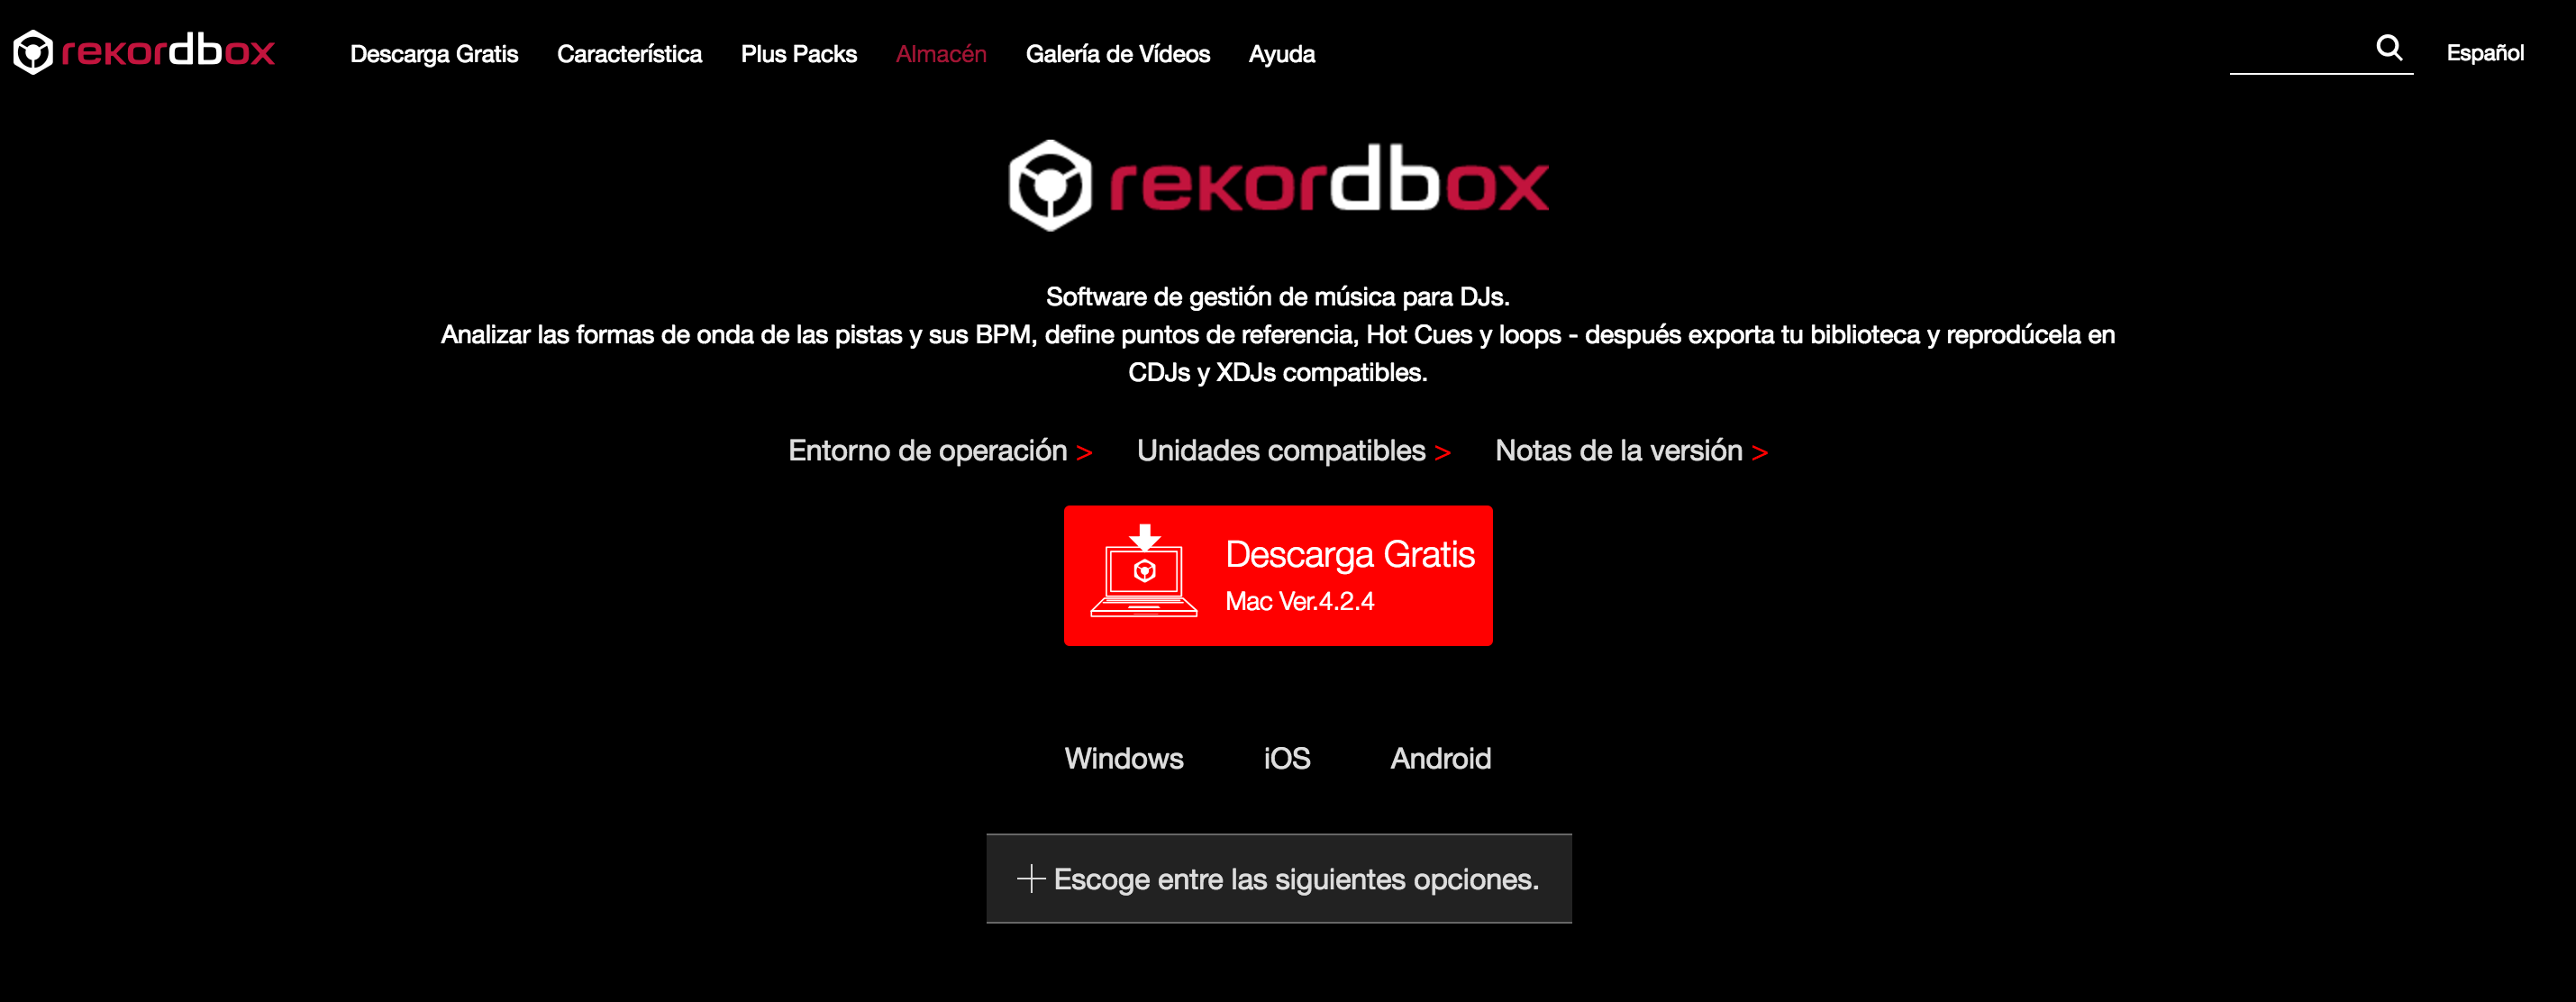 Nueva versión Rekordbox 4.2.4 ya disponible